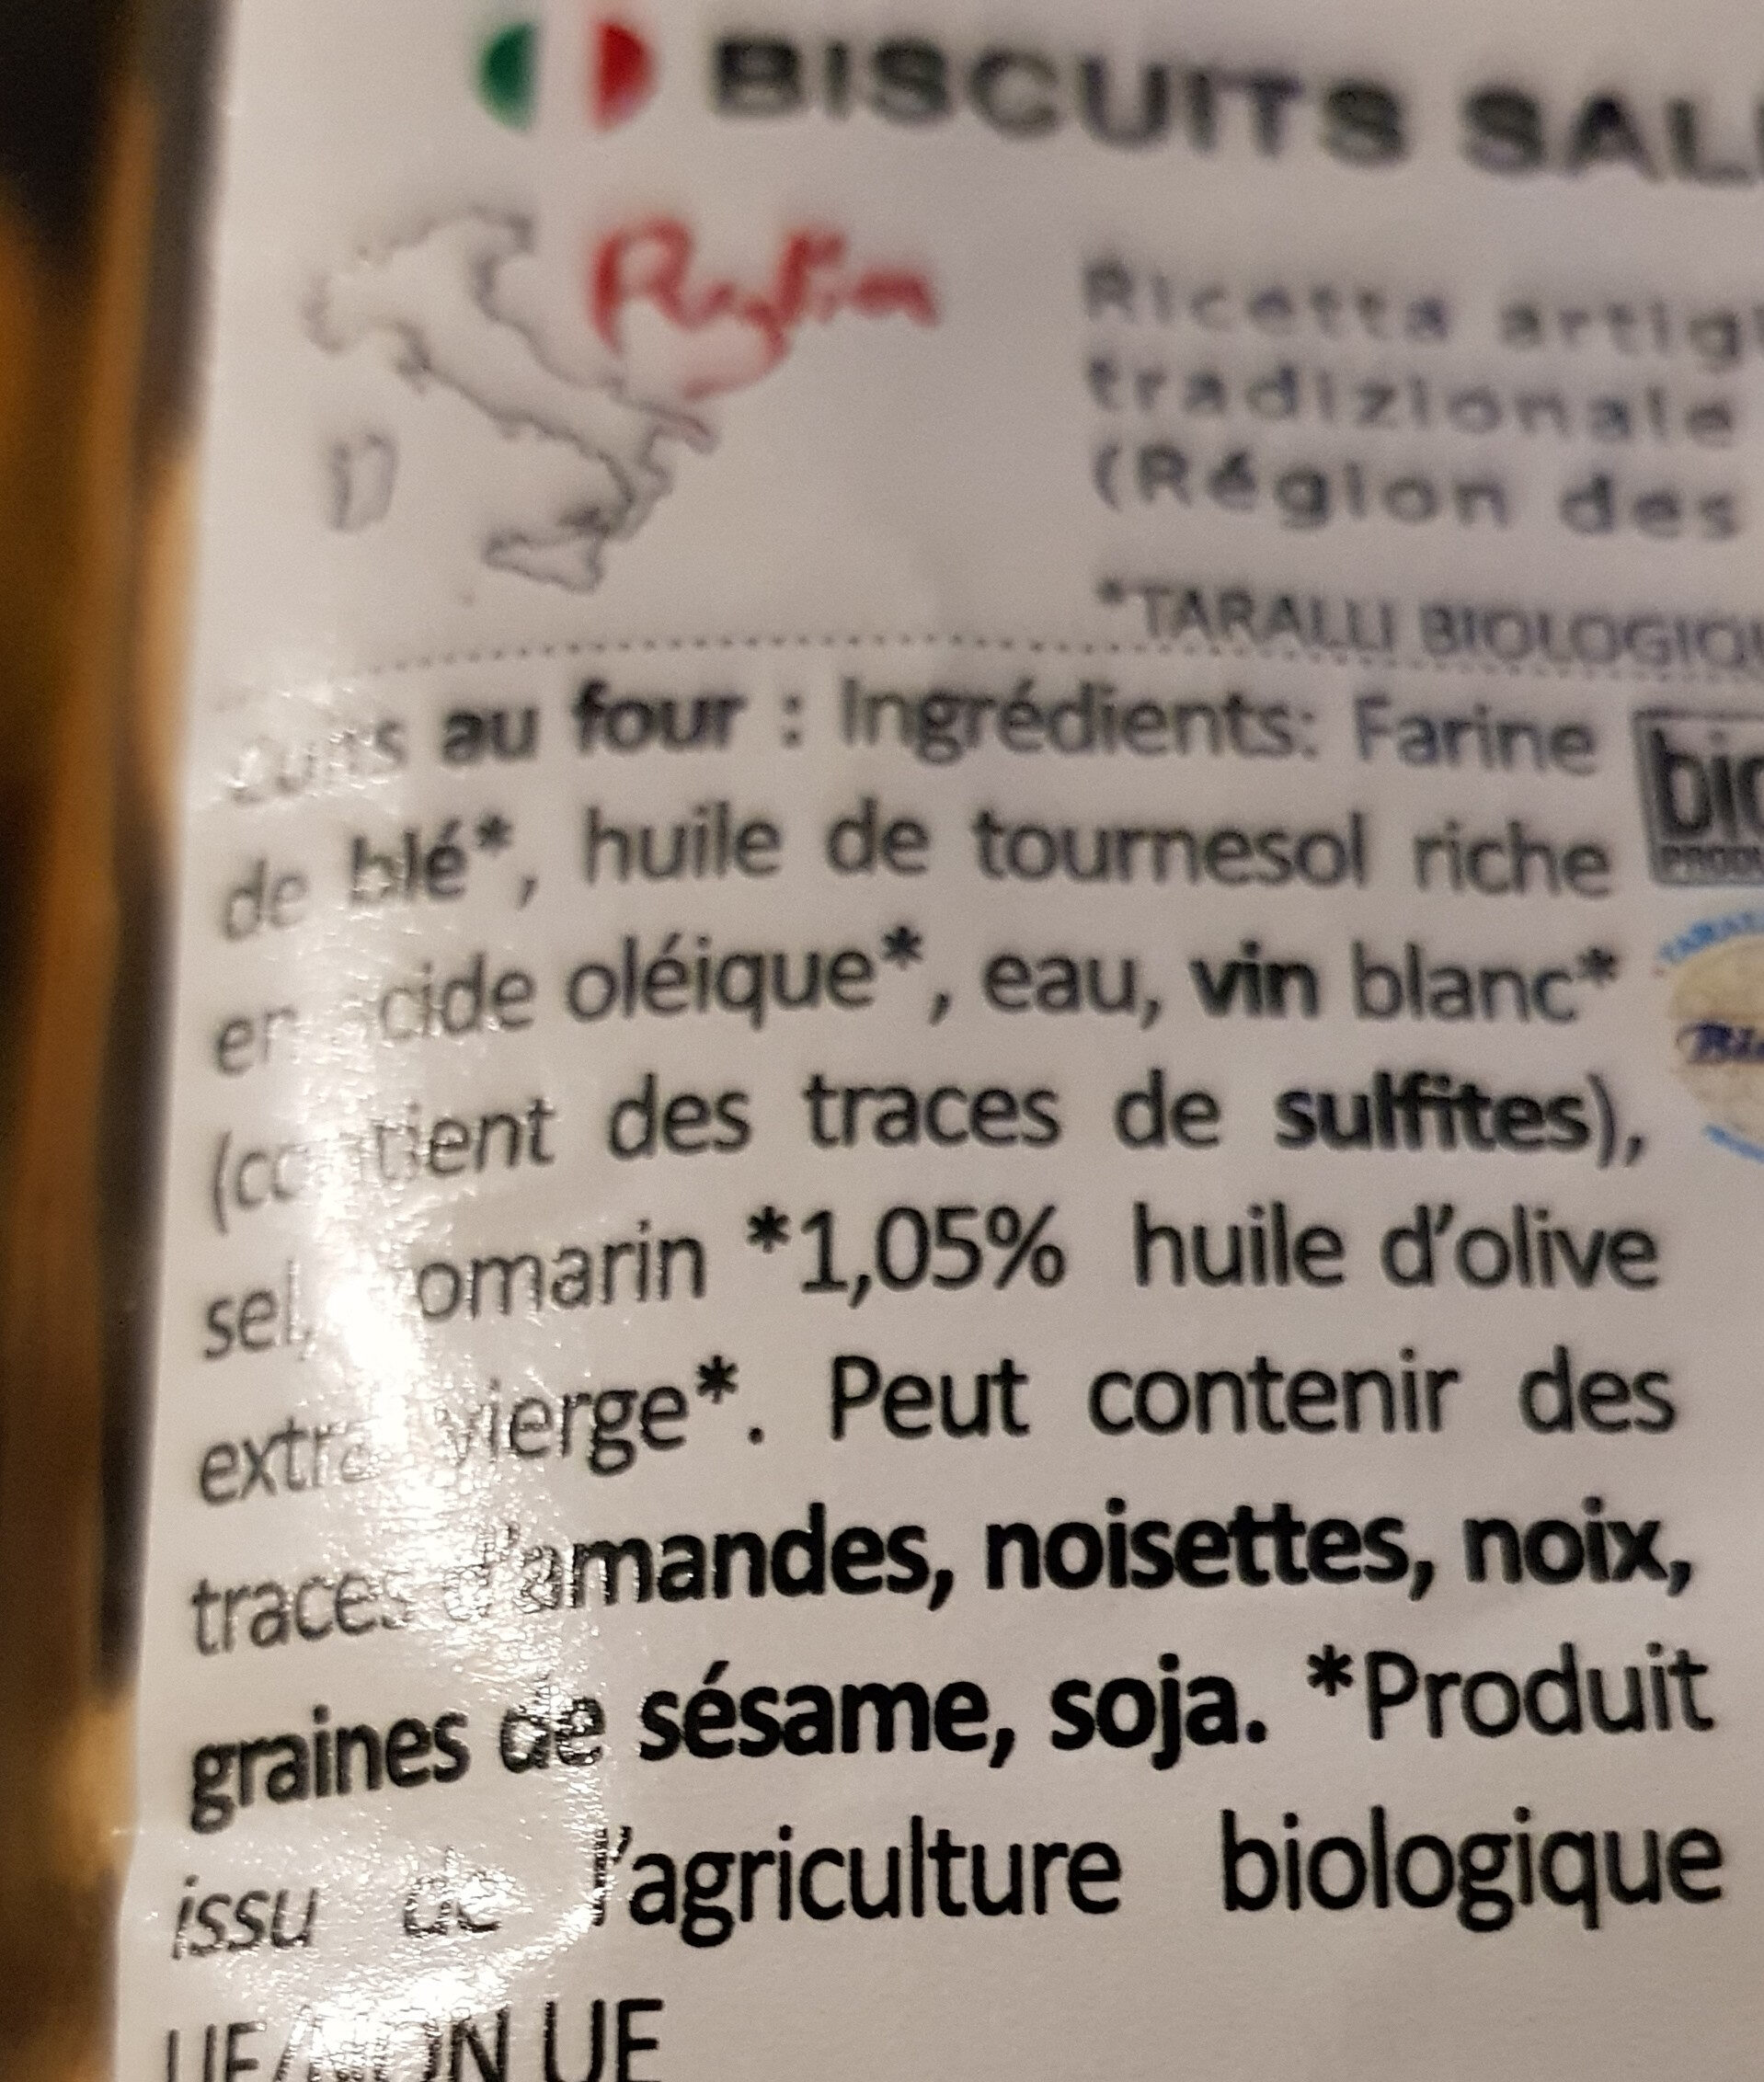 Biscuits salés - Ingredientes - fr